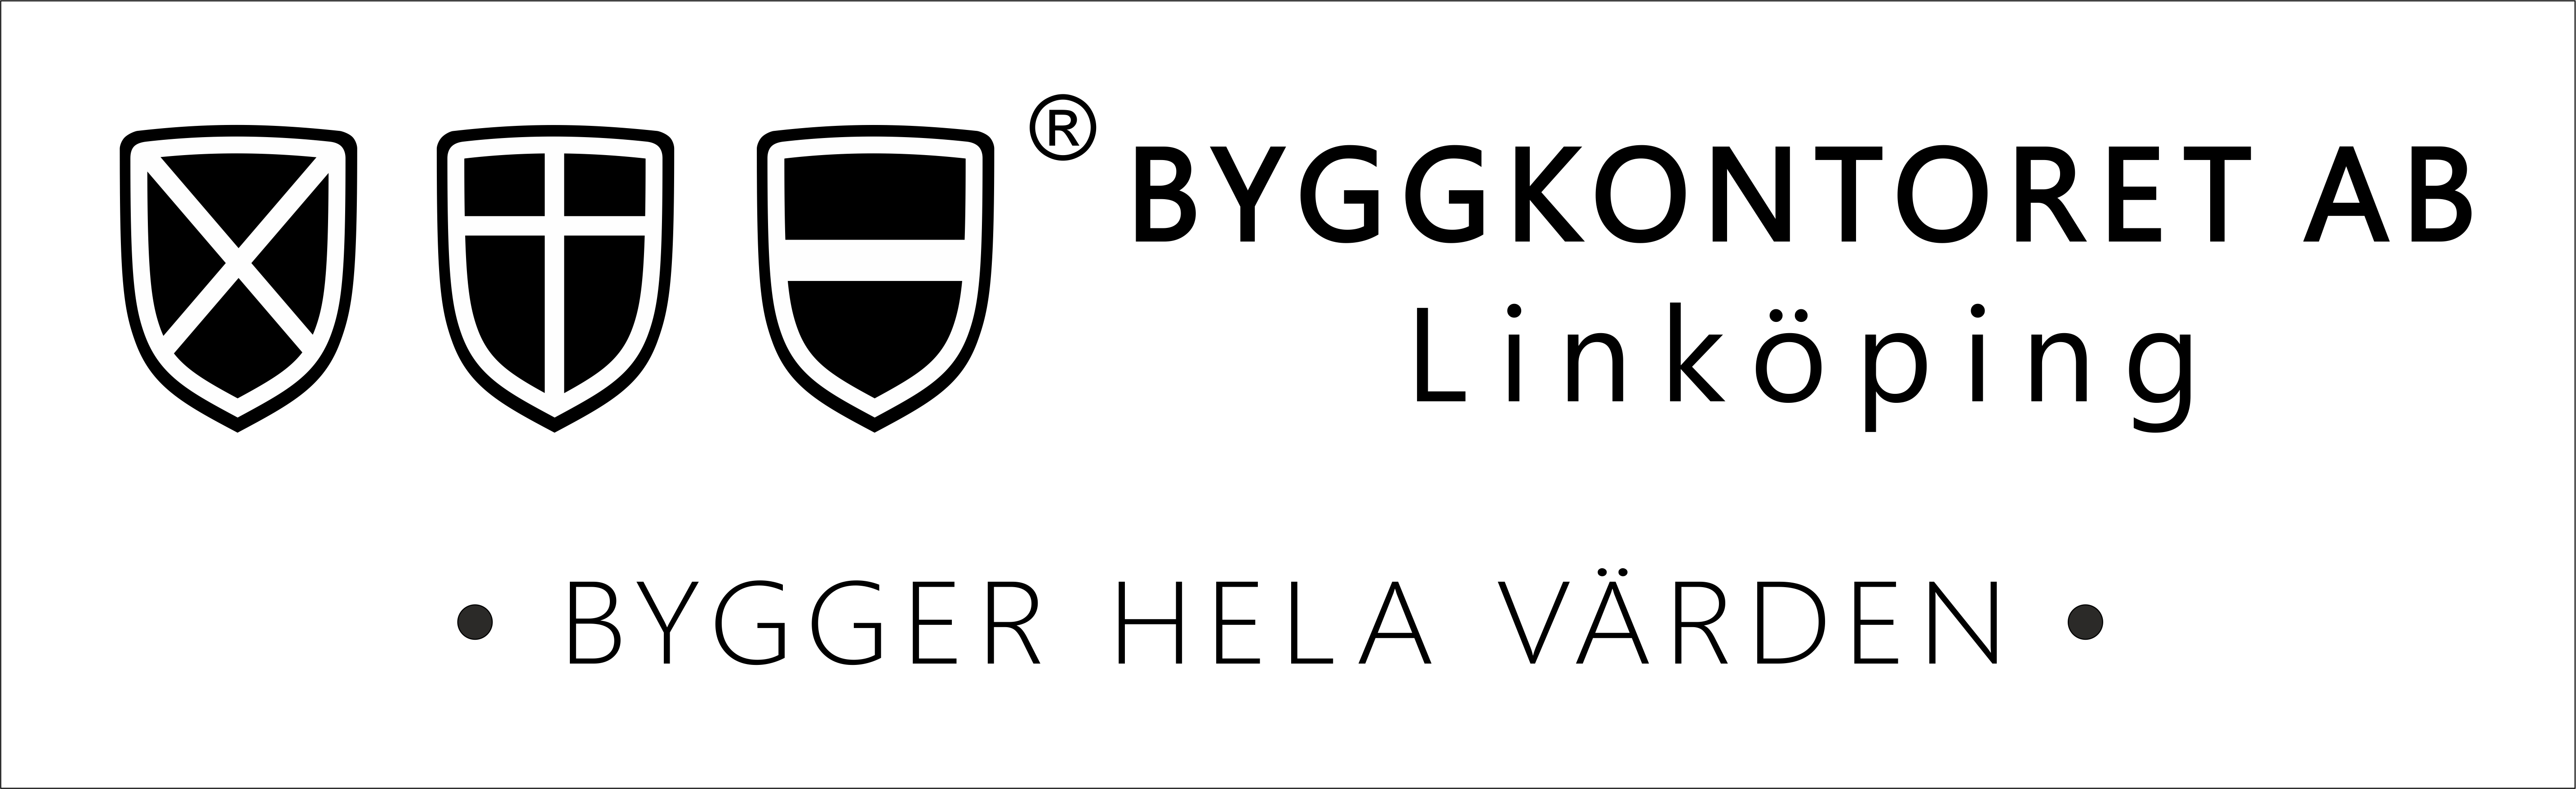 BYGGKONTORET AB Linköping BYGGER HELA VÄRDEN